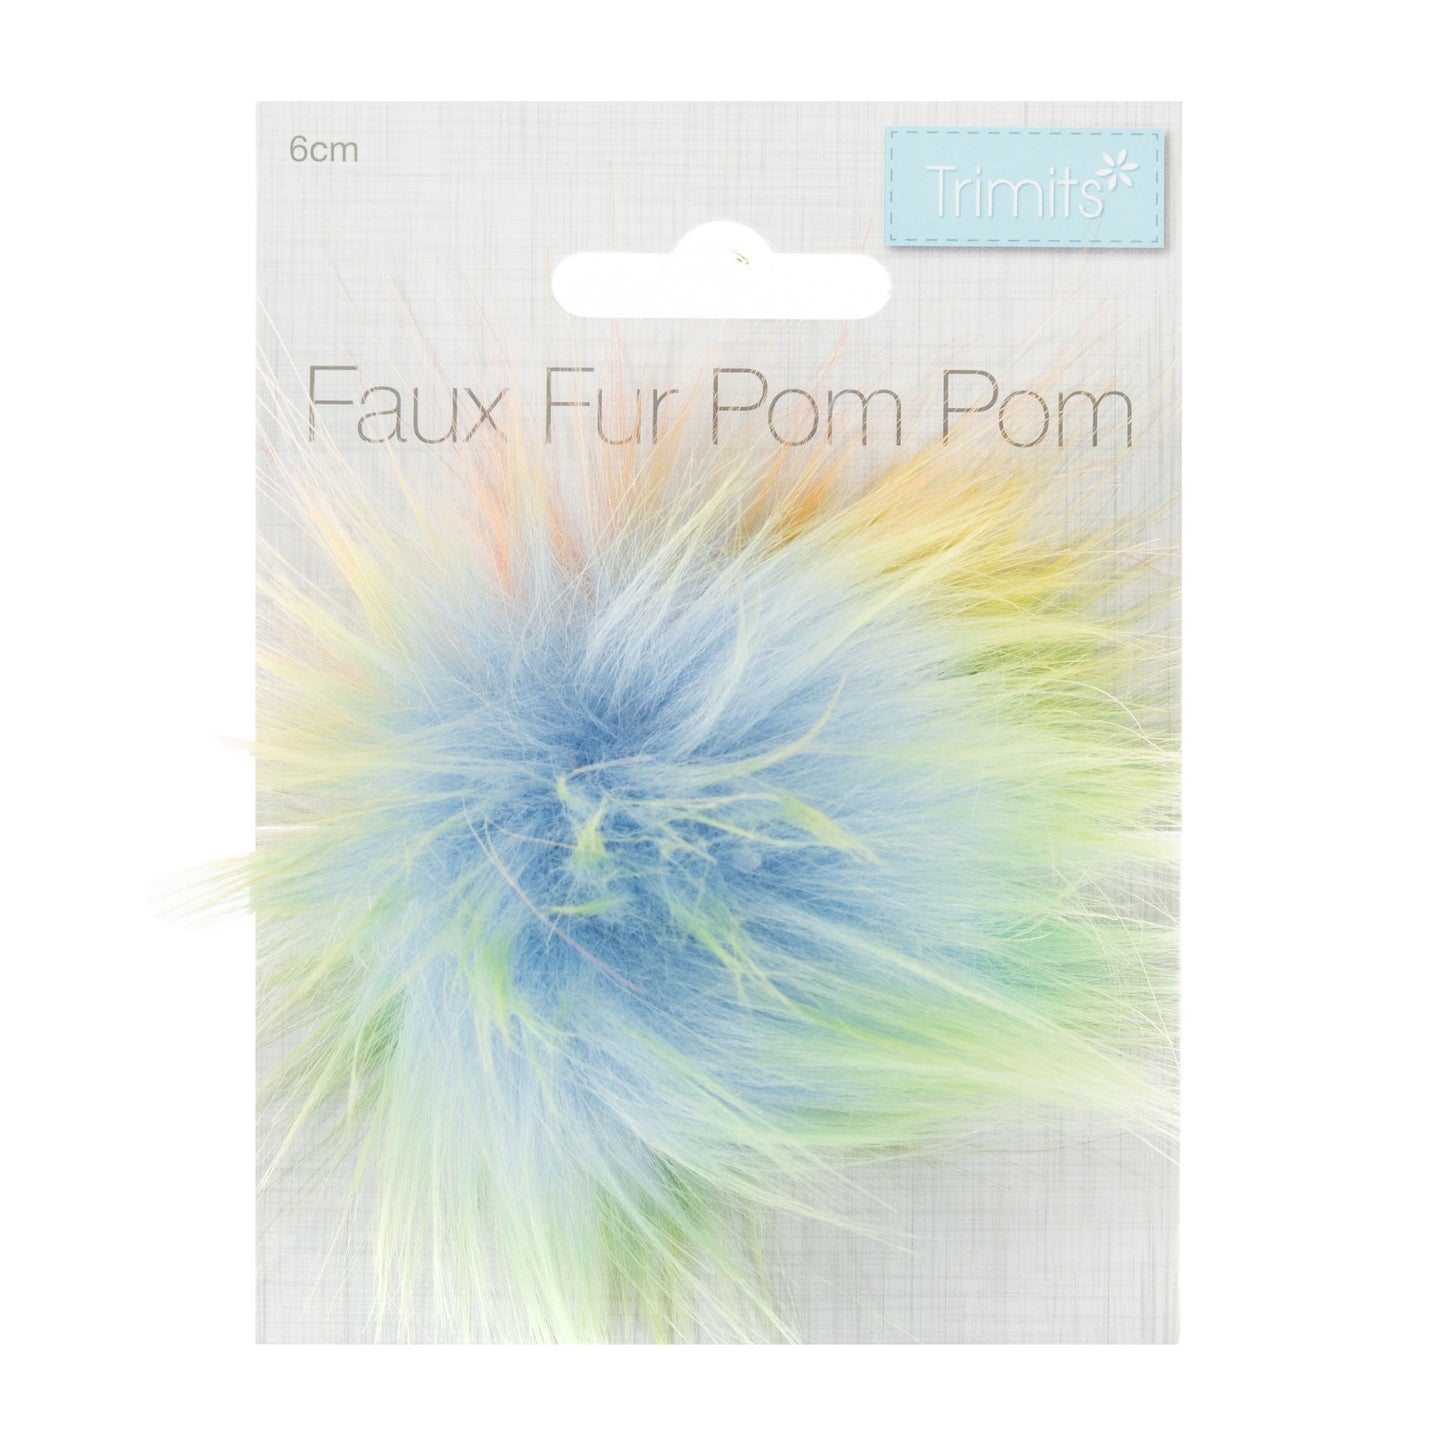 FAUX FUR POM POM - 1 Piece - 6cm- Rainbow